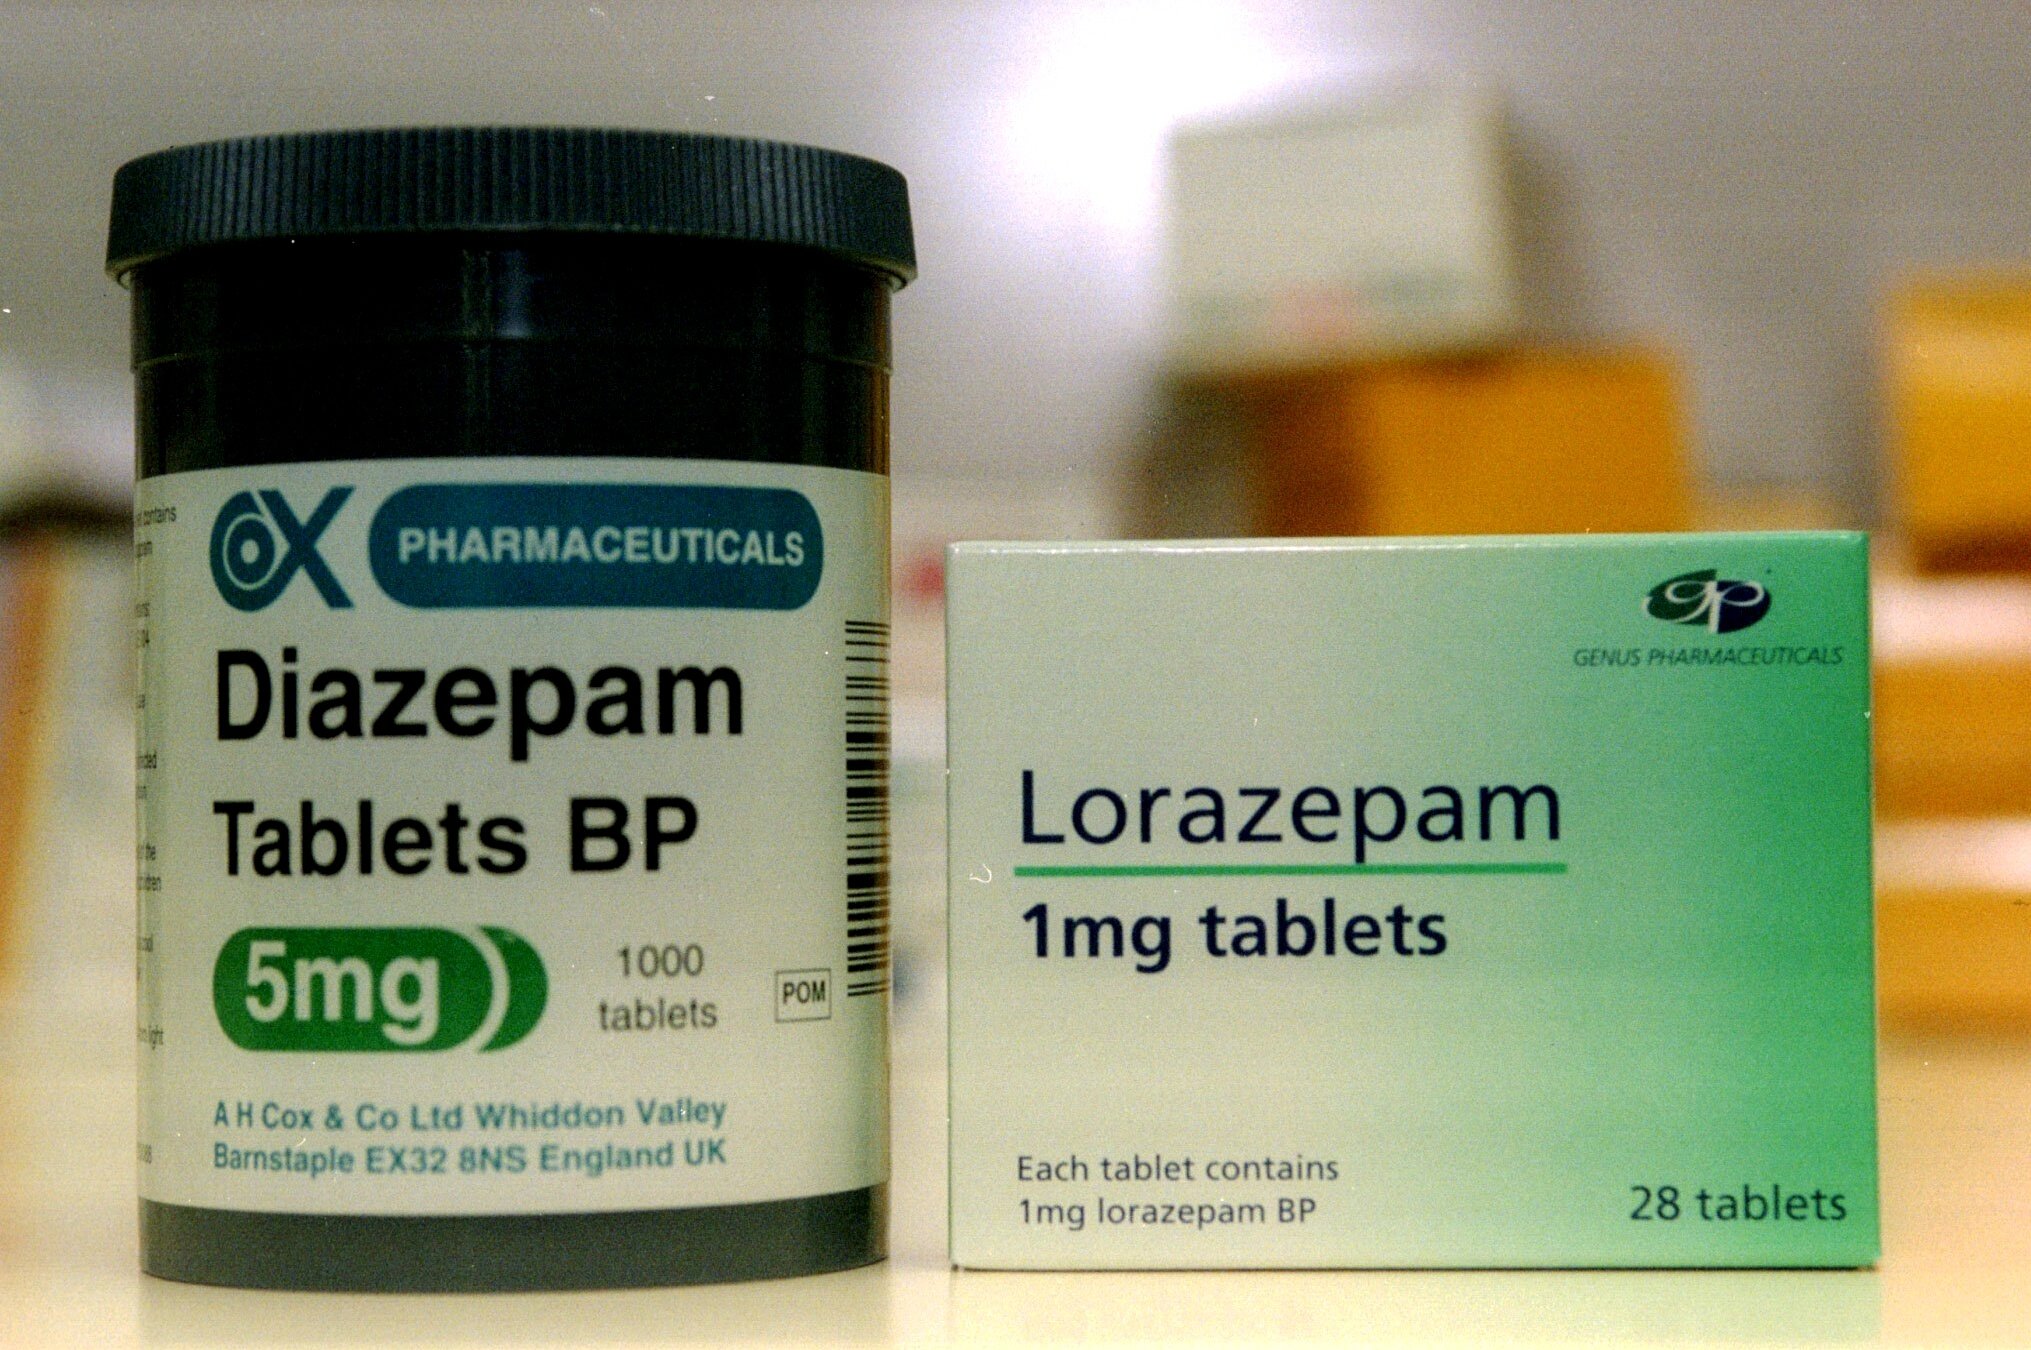 Diazepam ingår i den narkotikaklassade gruppen bensodiazepiner. Den dömda 35-åringen beräknas ha smugglat in omkring 23 000 tabletter av detta preparat.